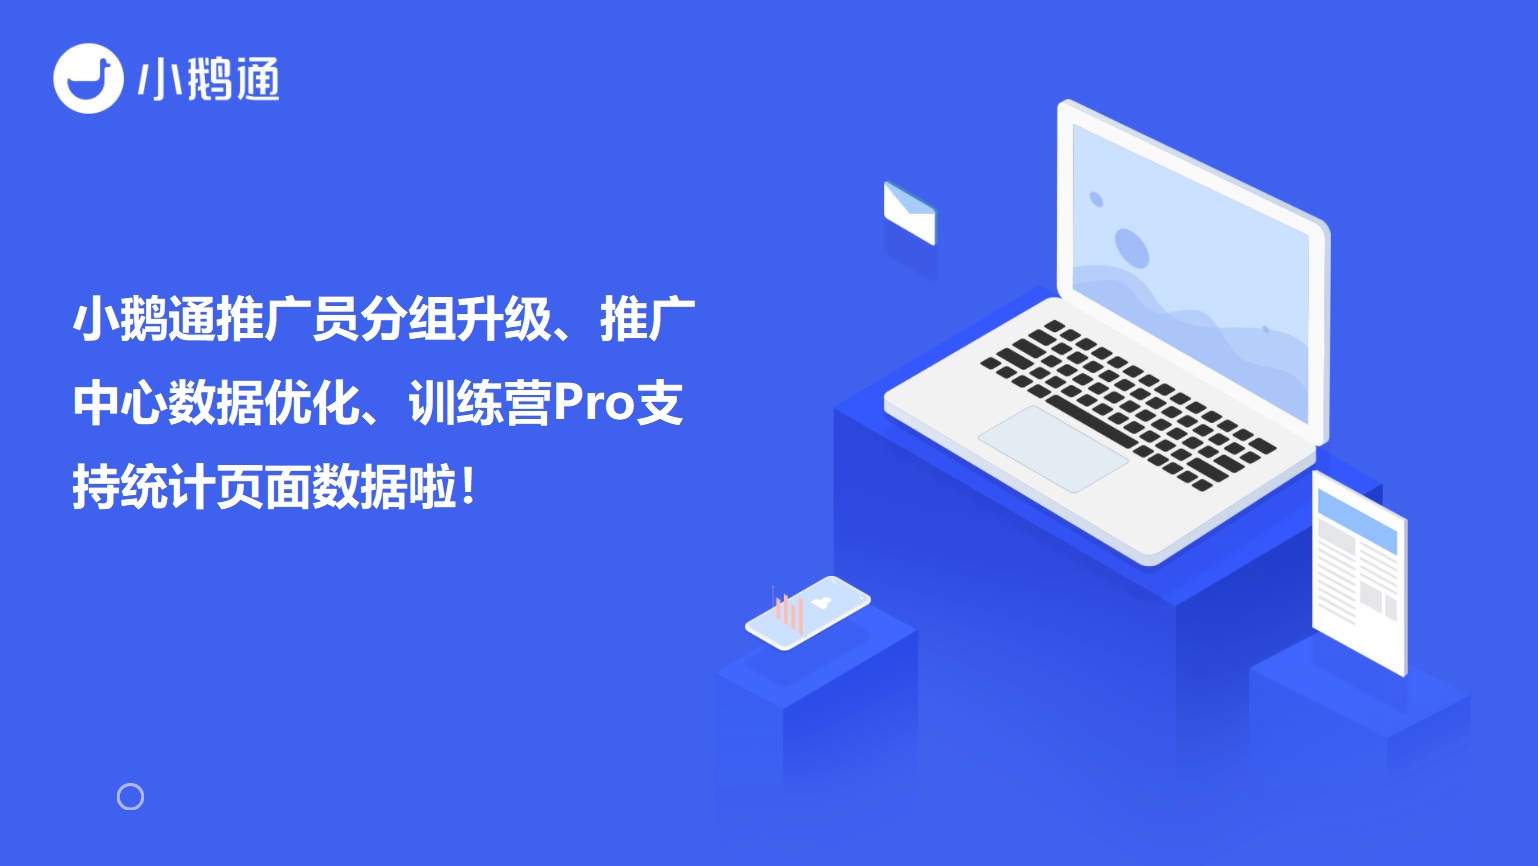 广州小鹅通推广员分组升级、推广中心数据优化、训练营Pro支持统计页面数据啦！